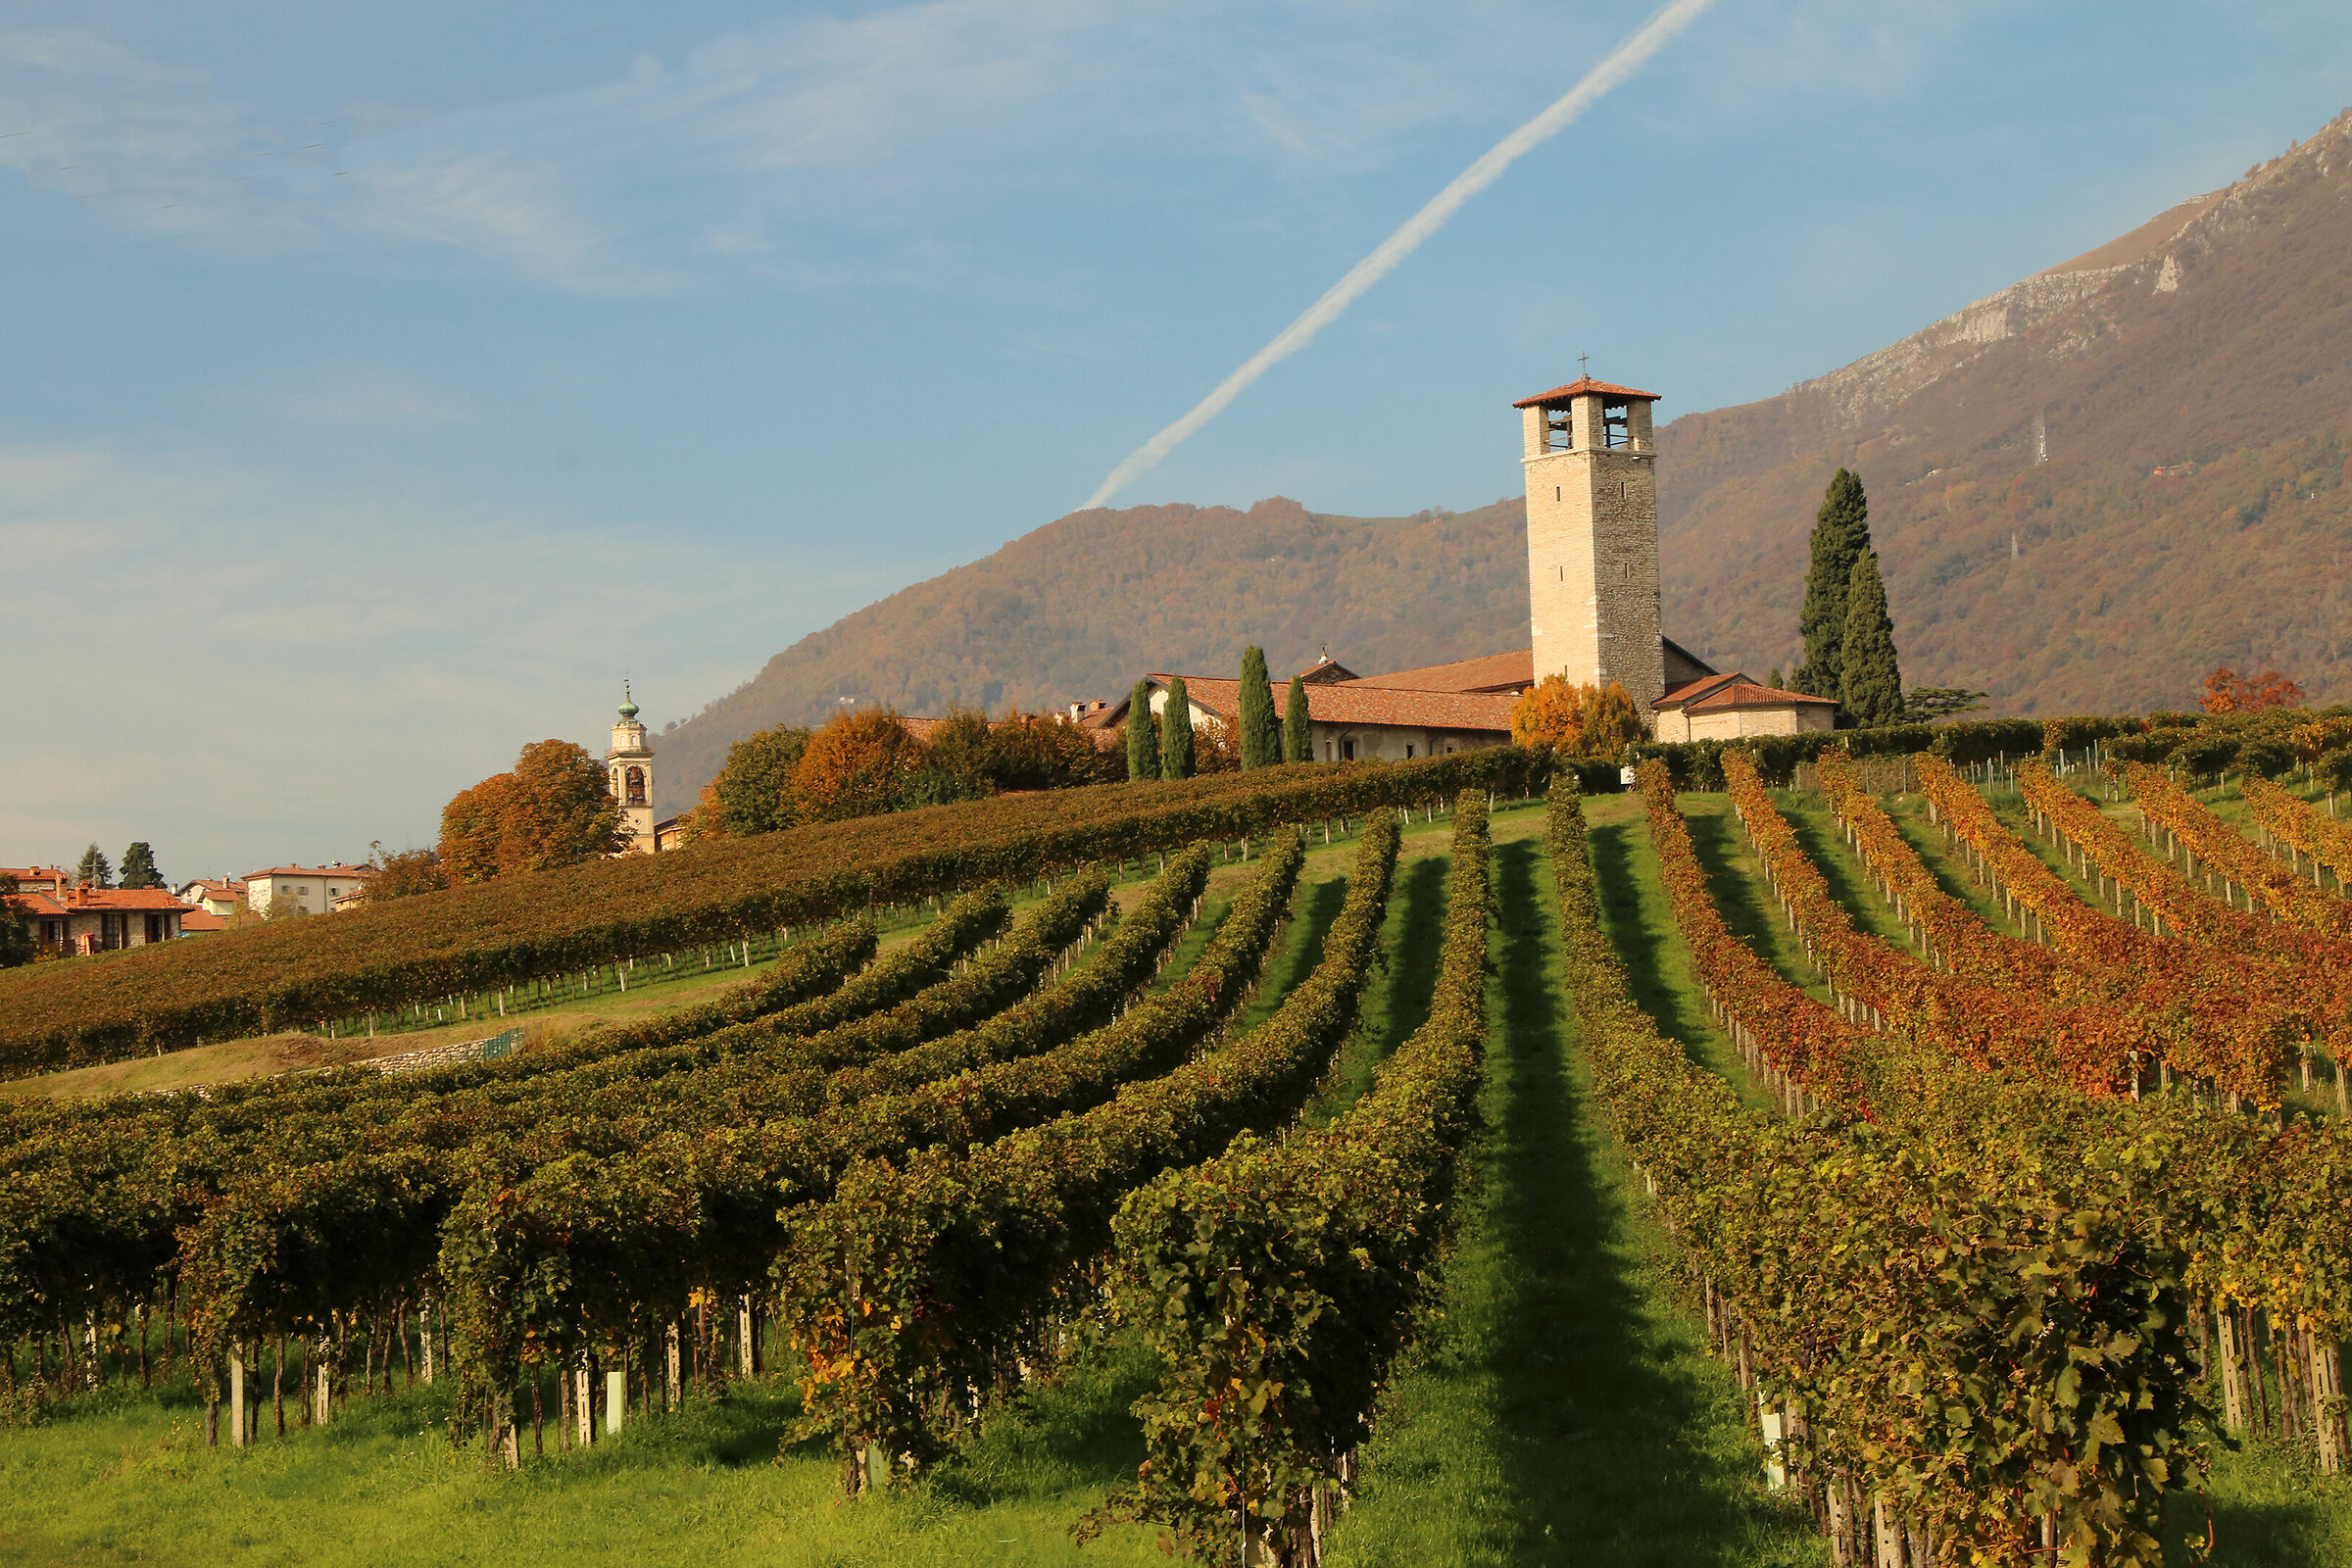 the vineyards of Almenno...